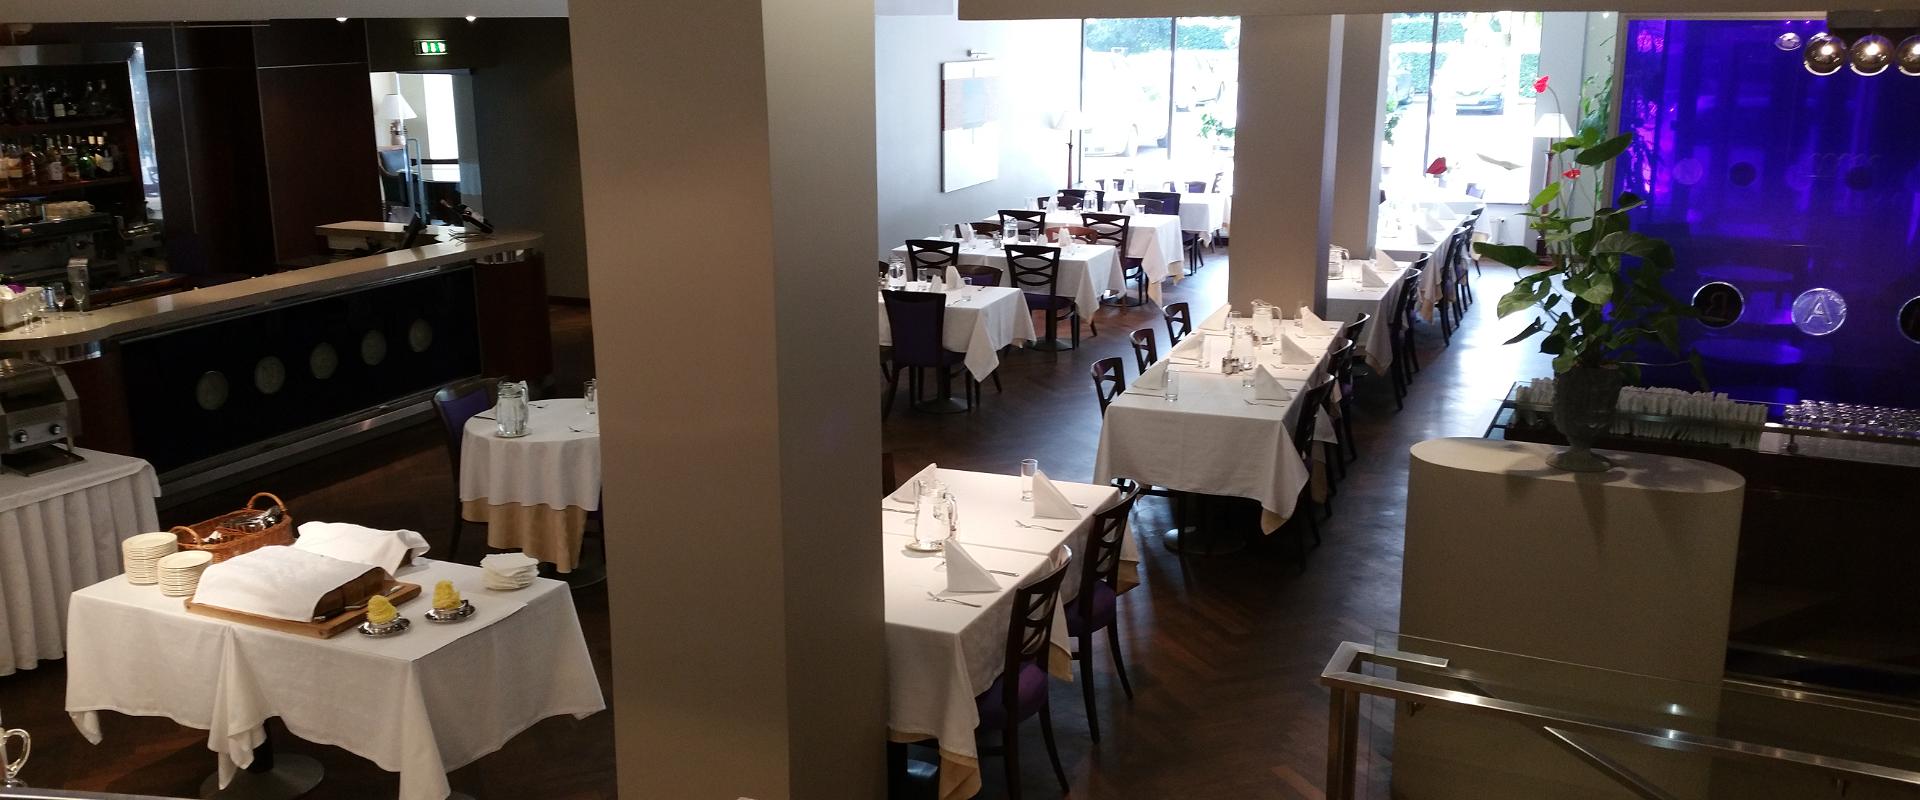 Viesnīcas Grand Hotel Viljandi a`la carte restorānā var rīkot gan biznesa pusdienas, gan lielus pasākumus. Kamēr restorāna izsmacinātie ēdieni baro Jū